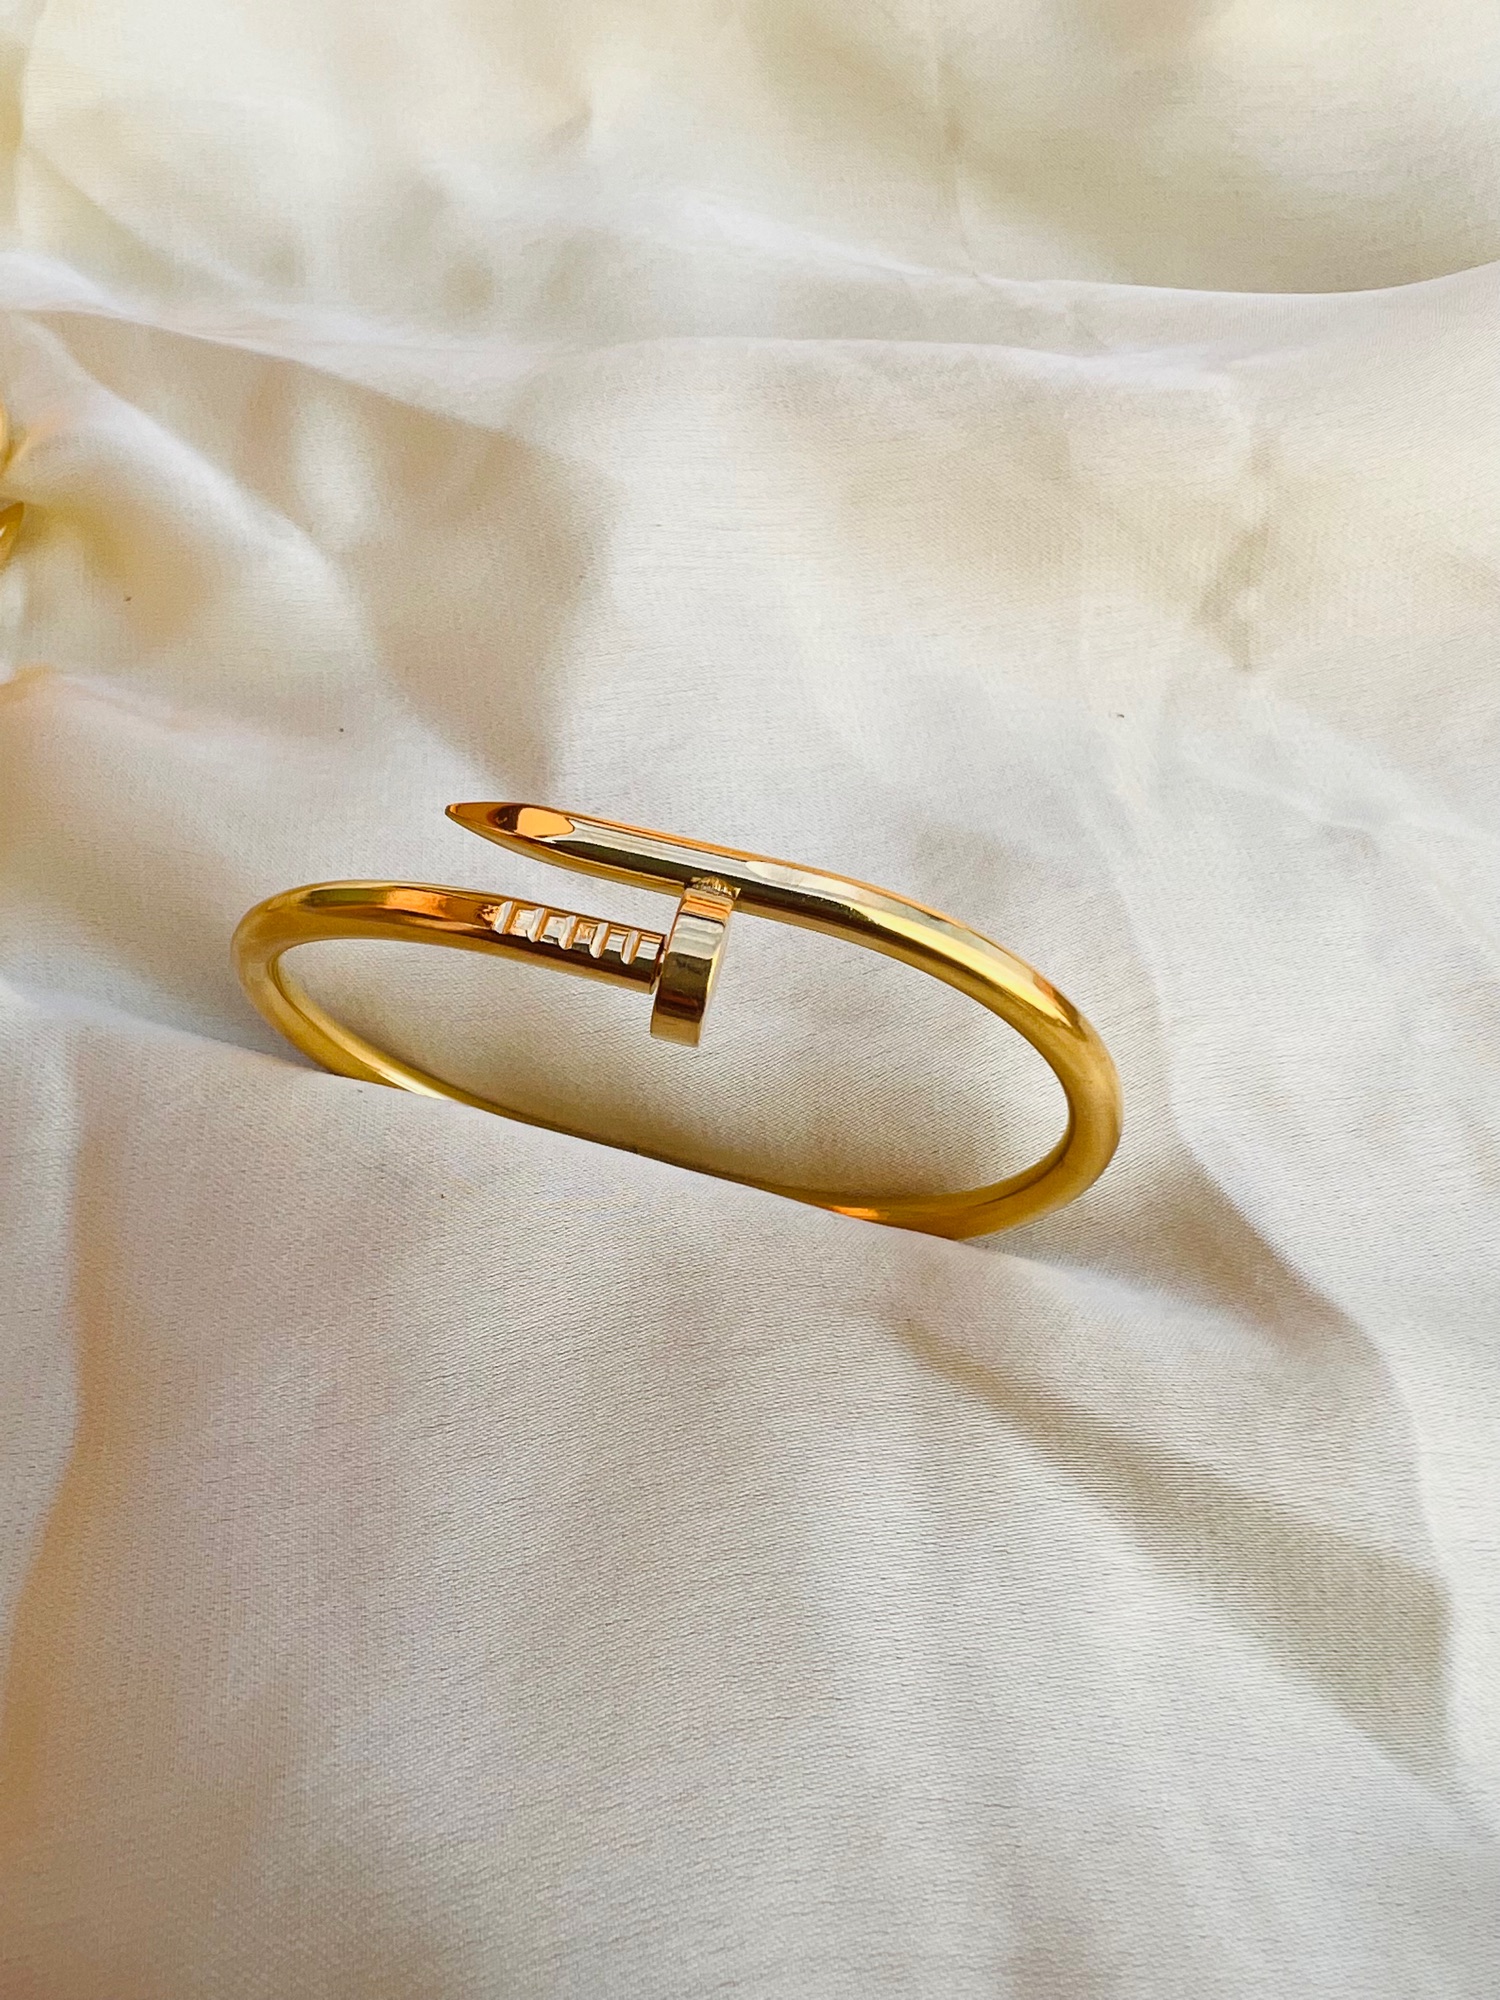 Hira Panna 18k Exclusive Gold Bracelet - Hira Panna Jewellers